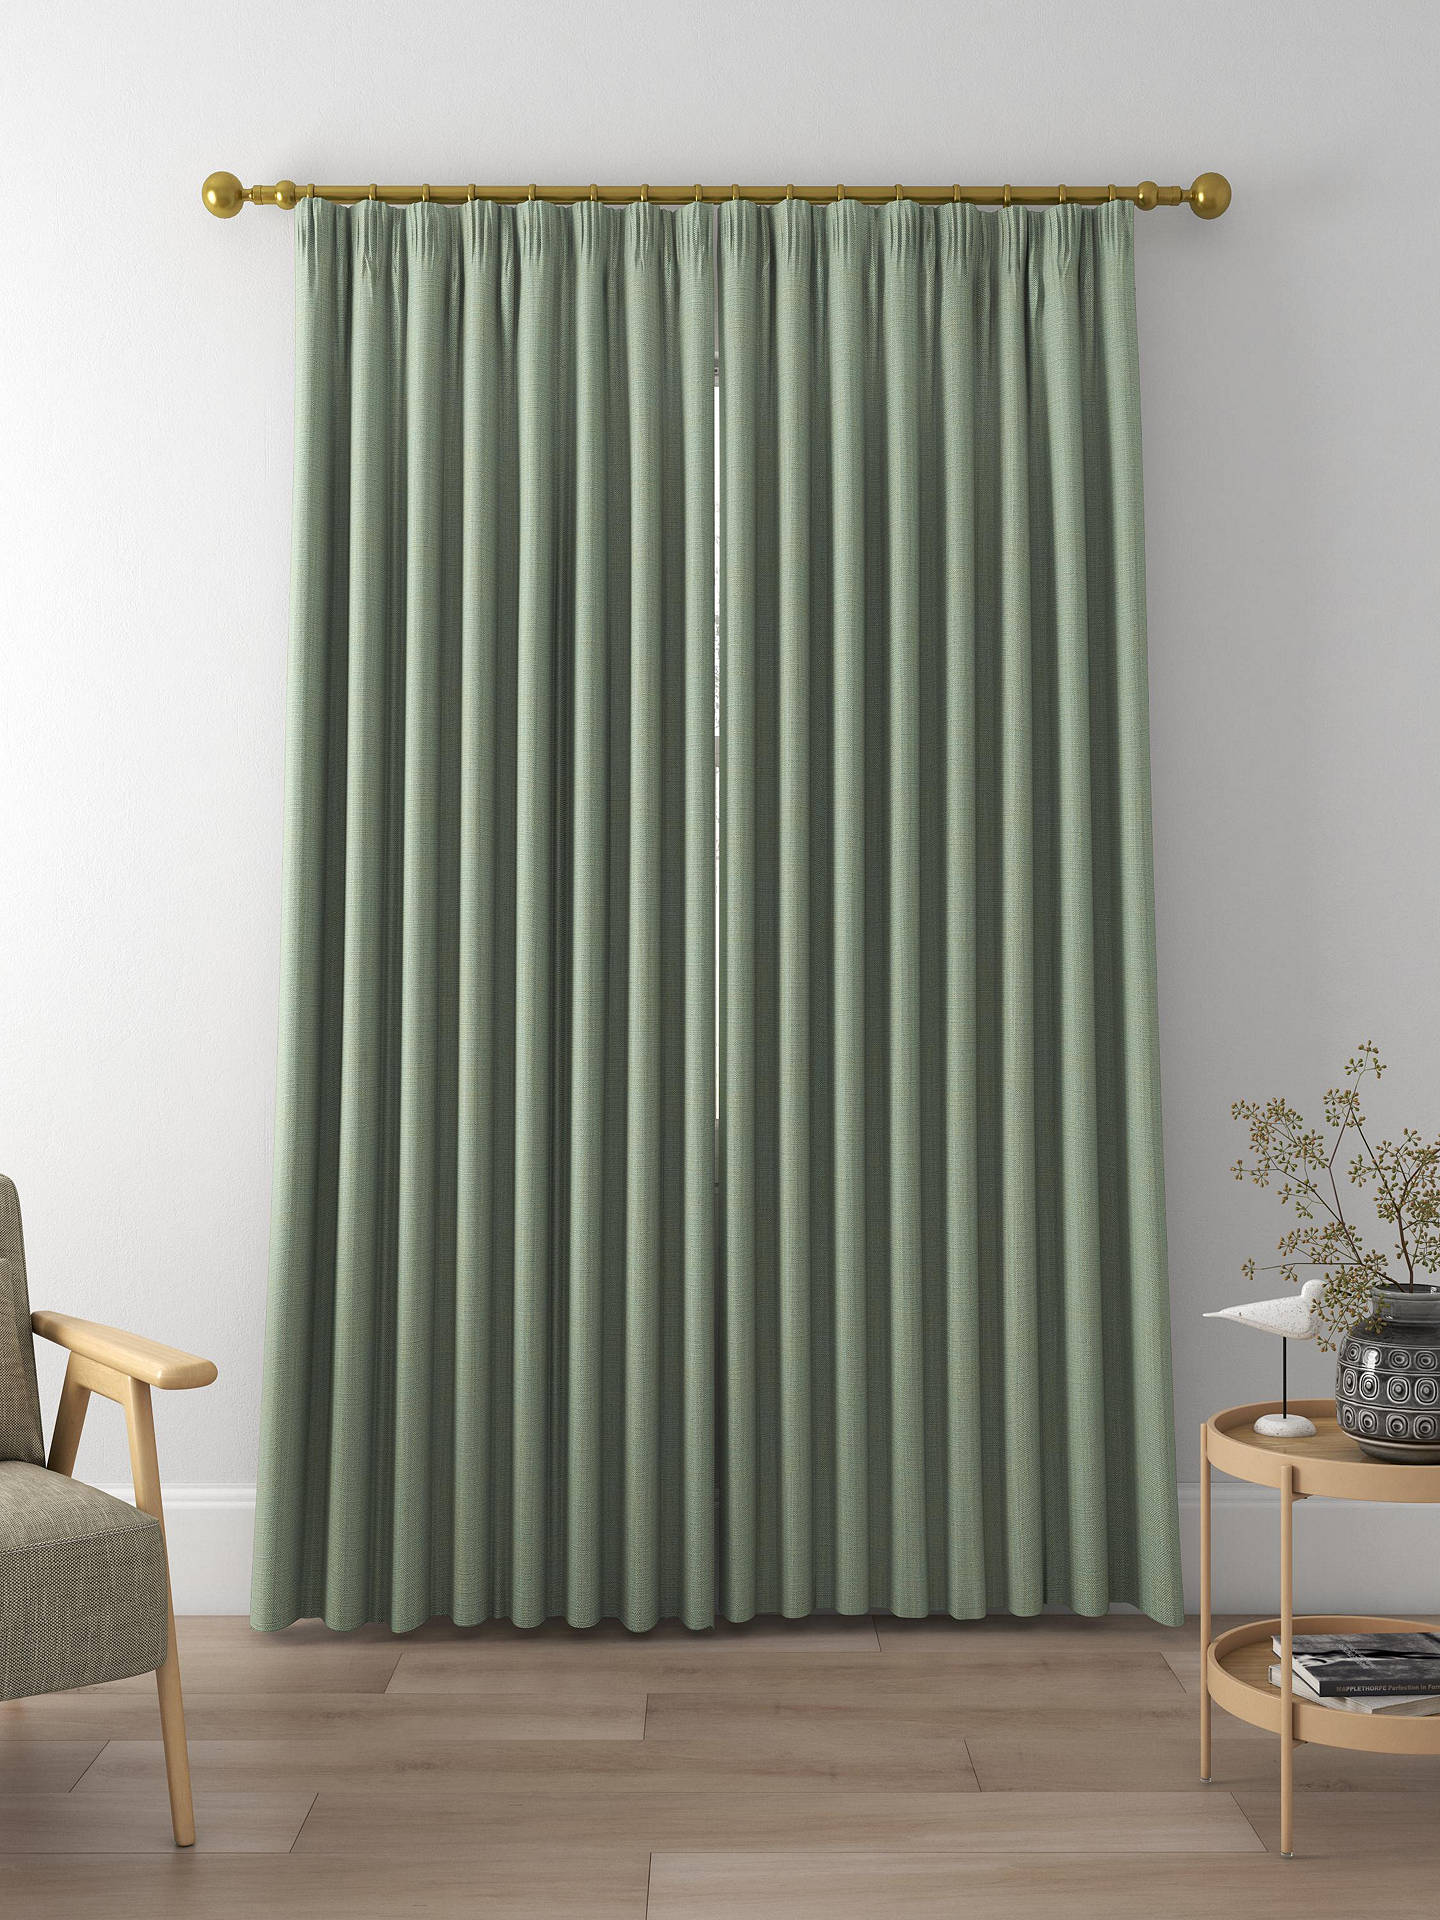 Designers Guild Skye Made to Measure Curtains, Aqua